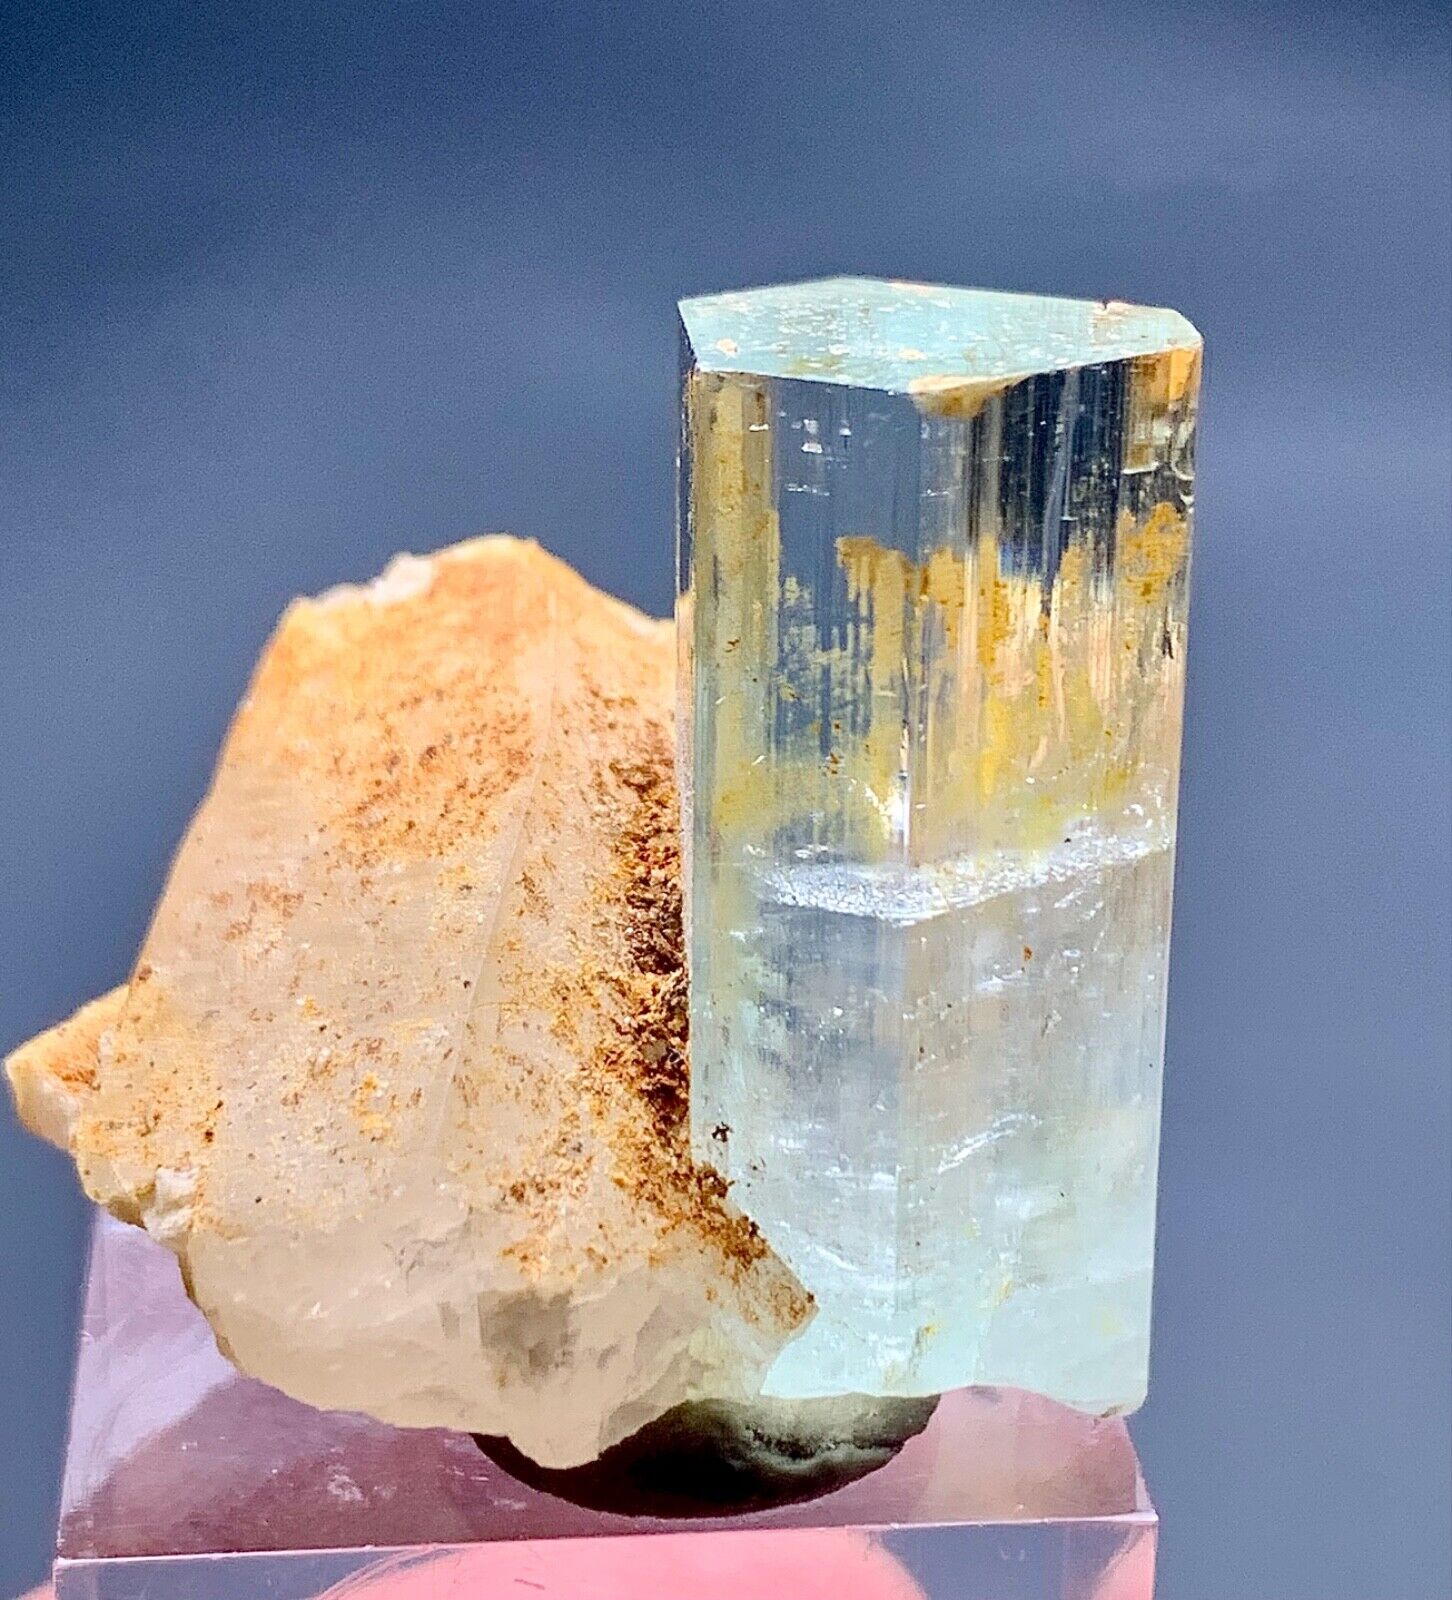 110 Carat Aquamarine Crystal Combine With Quartz Specimen From Skardu Pakistan